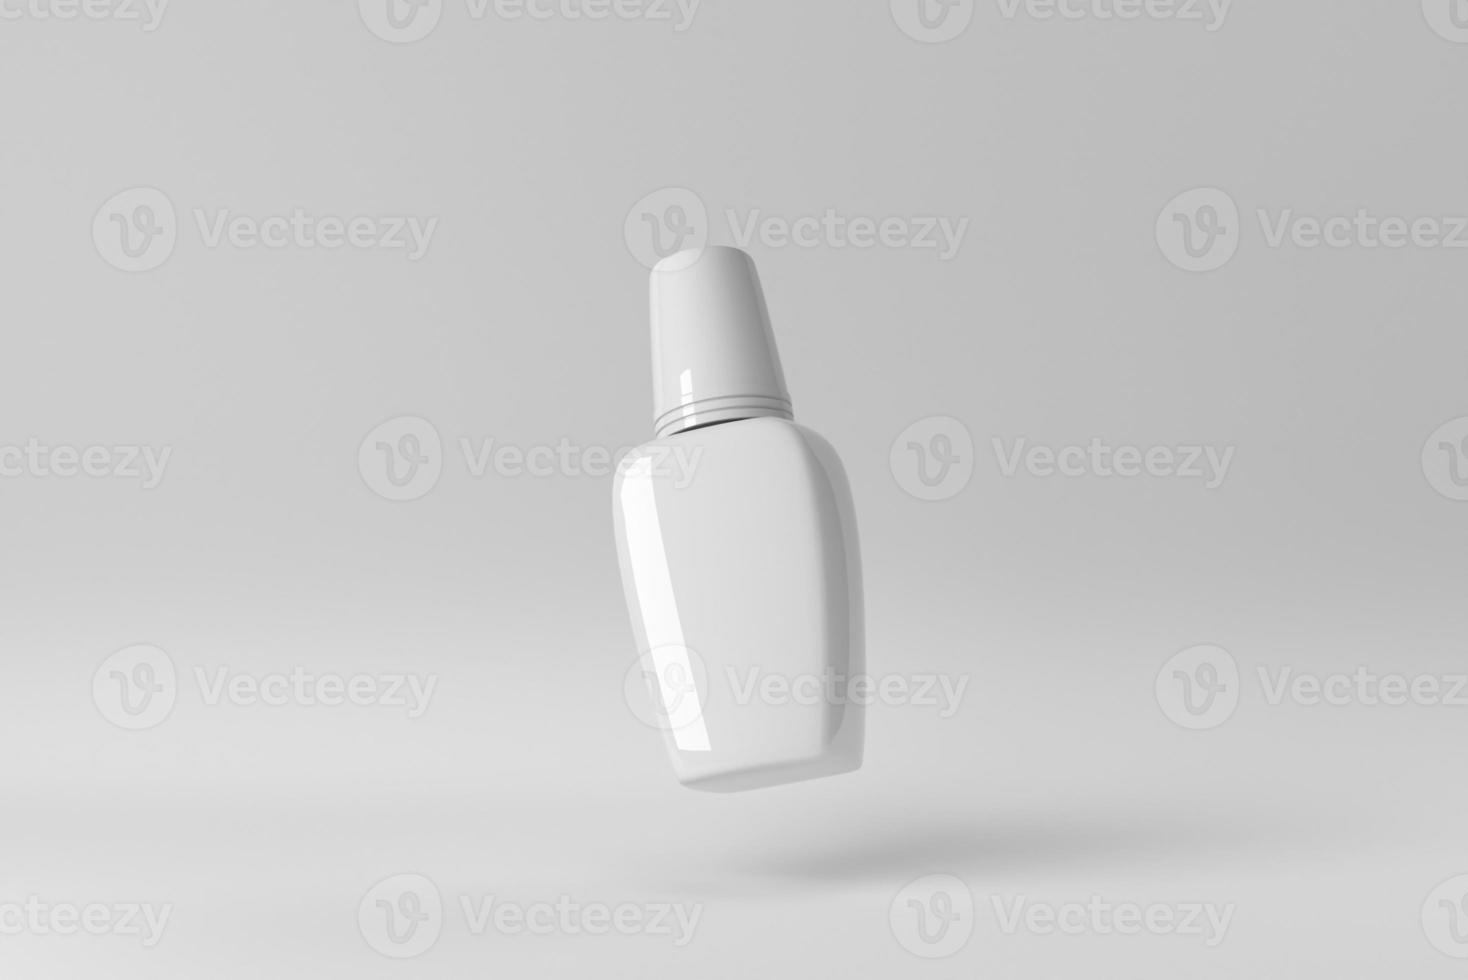 affichage de produits cosmétiques sur fond blanc pour la présentation de produits de soins de la peau. rendu 3D. photo